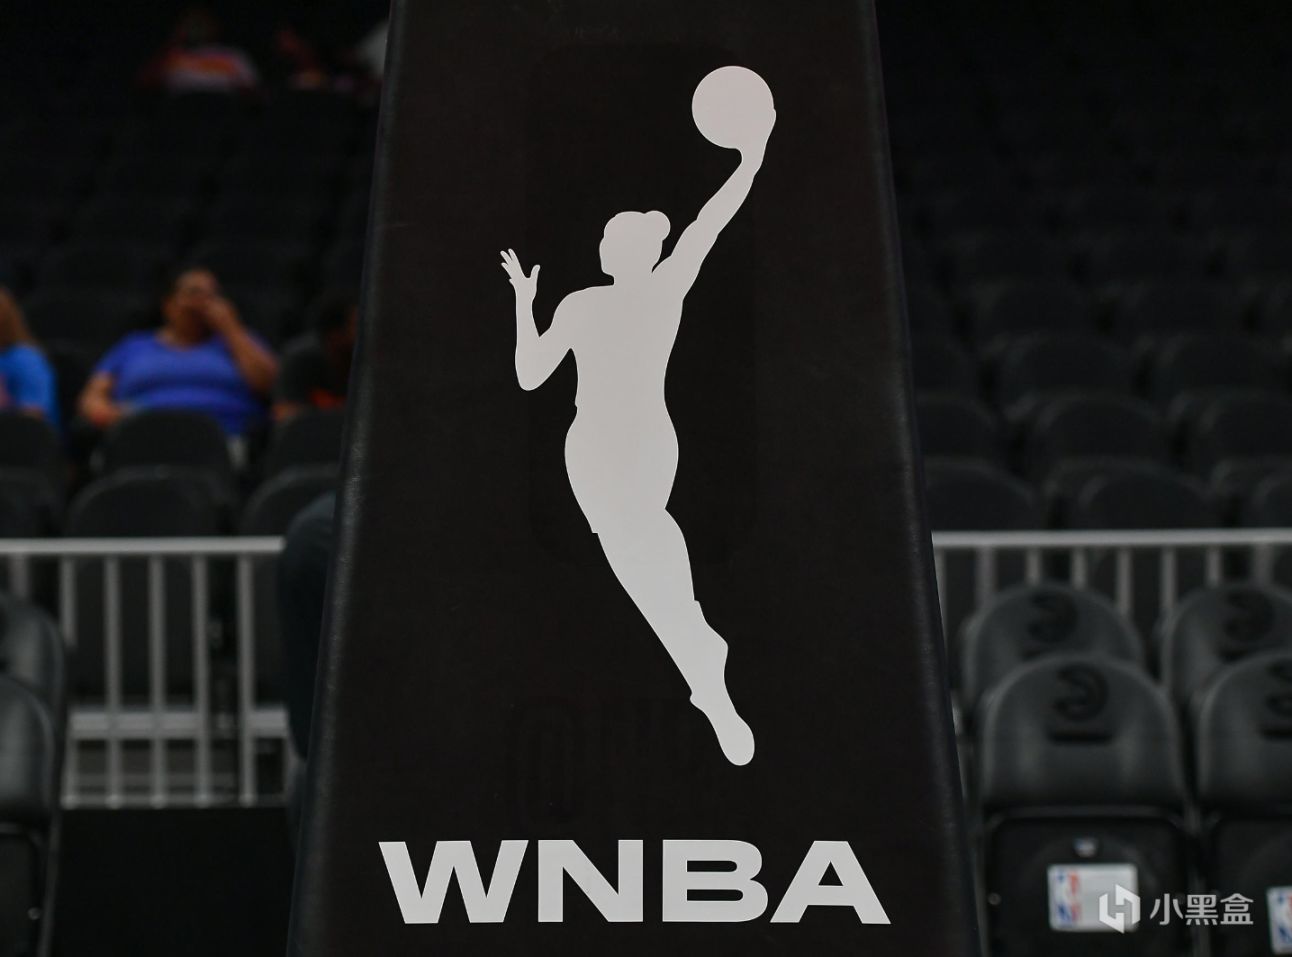 【主机游戏】索尼与WNBA达成合作伙伴关系 共同探索发展方向-第1张